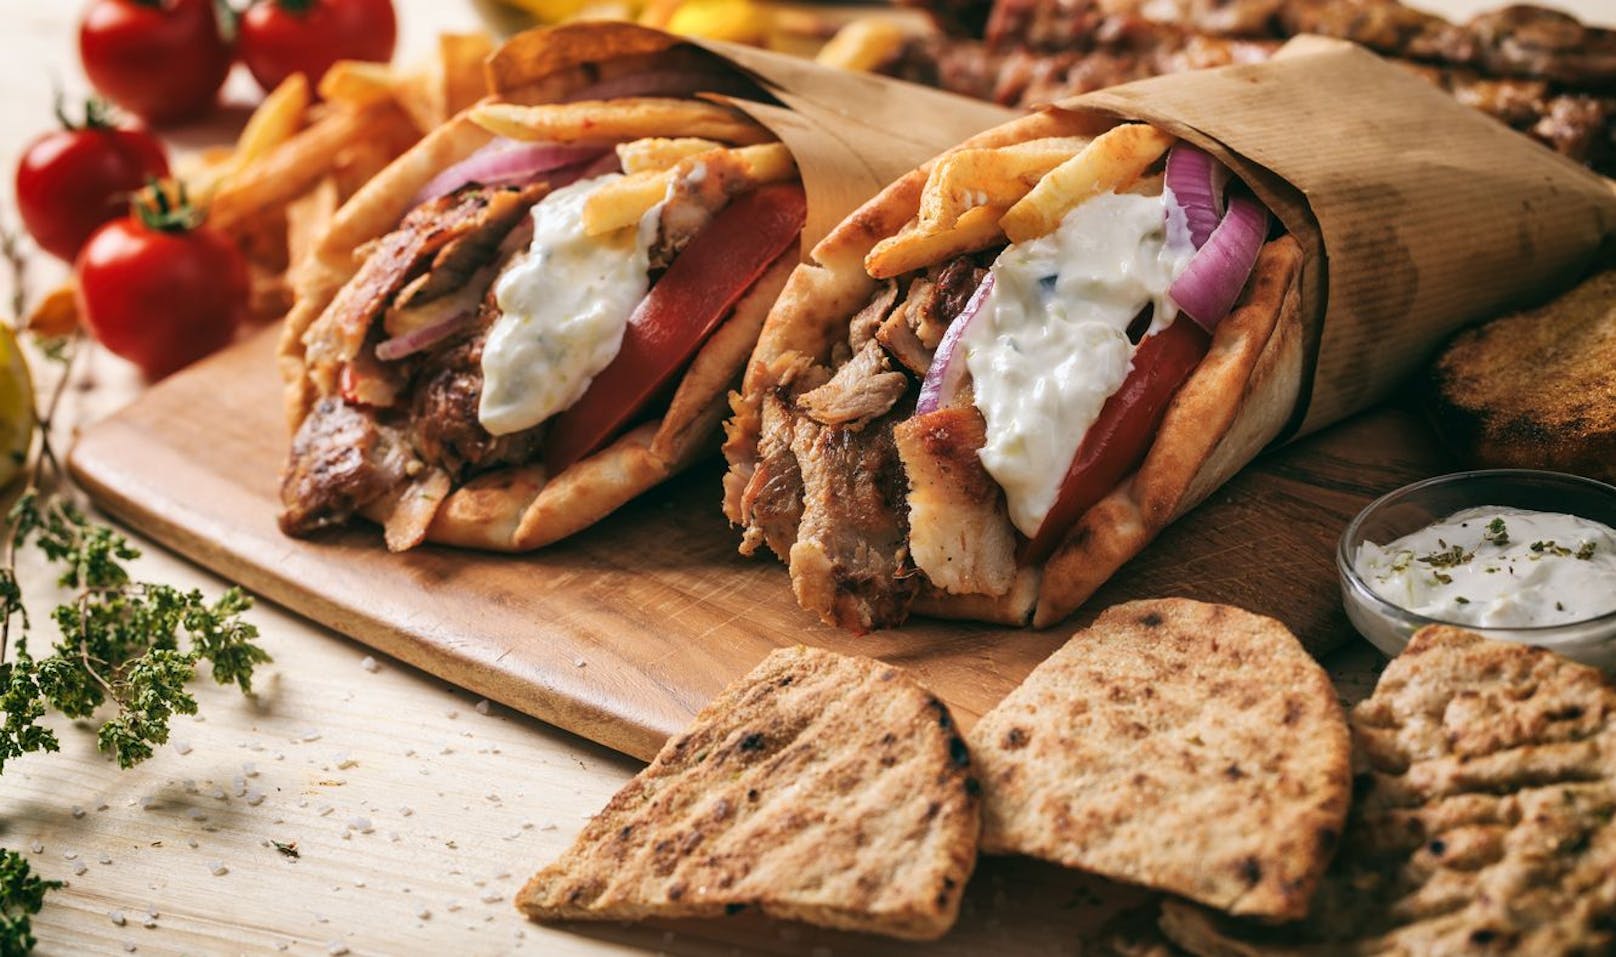 In griechischen Restaurants wird zum Beispiel oft das klassische Gyros angeboten. Ersetze das fettige Schweinefleisch lieber mit Fleischspießen oder Hackfrikadellen. Beilagen wie Huhn oder Fisch sättigen und halten dich zudem gesund.